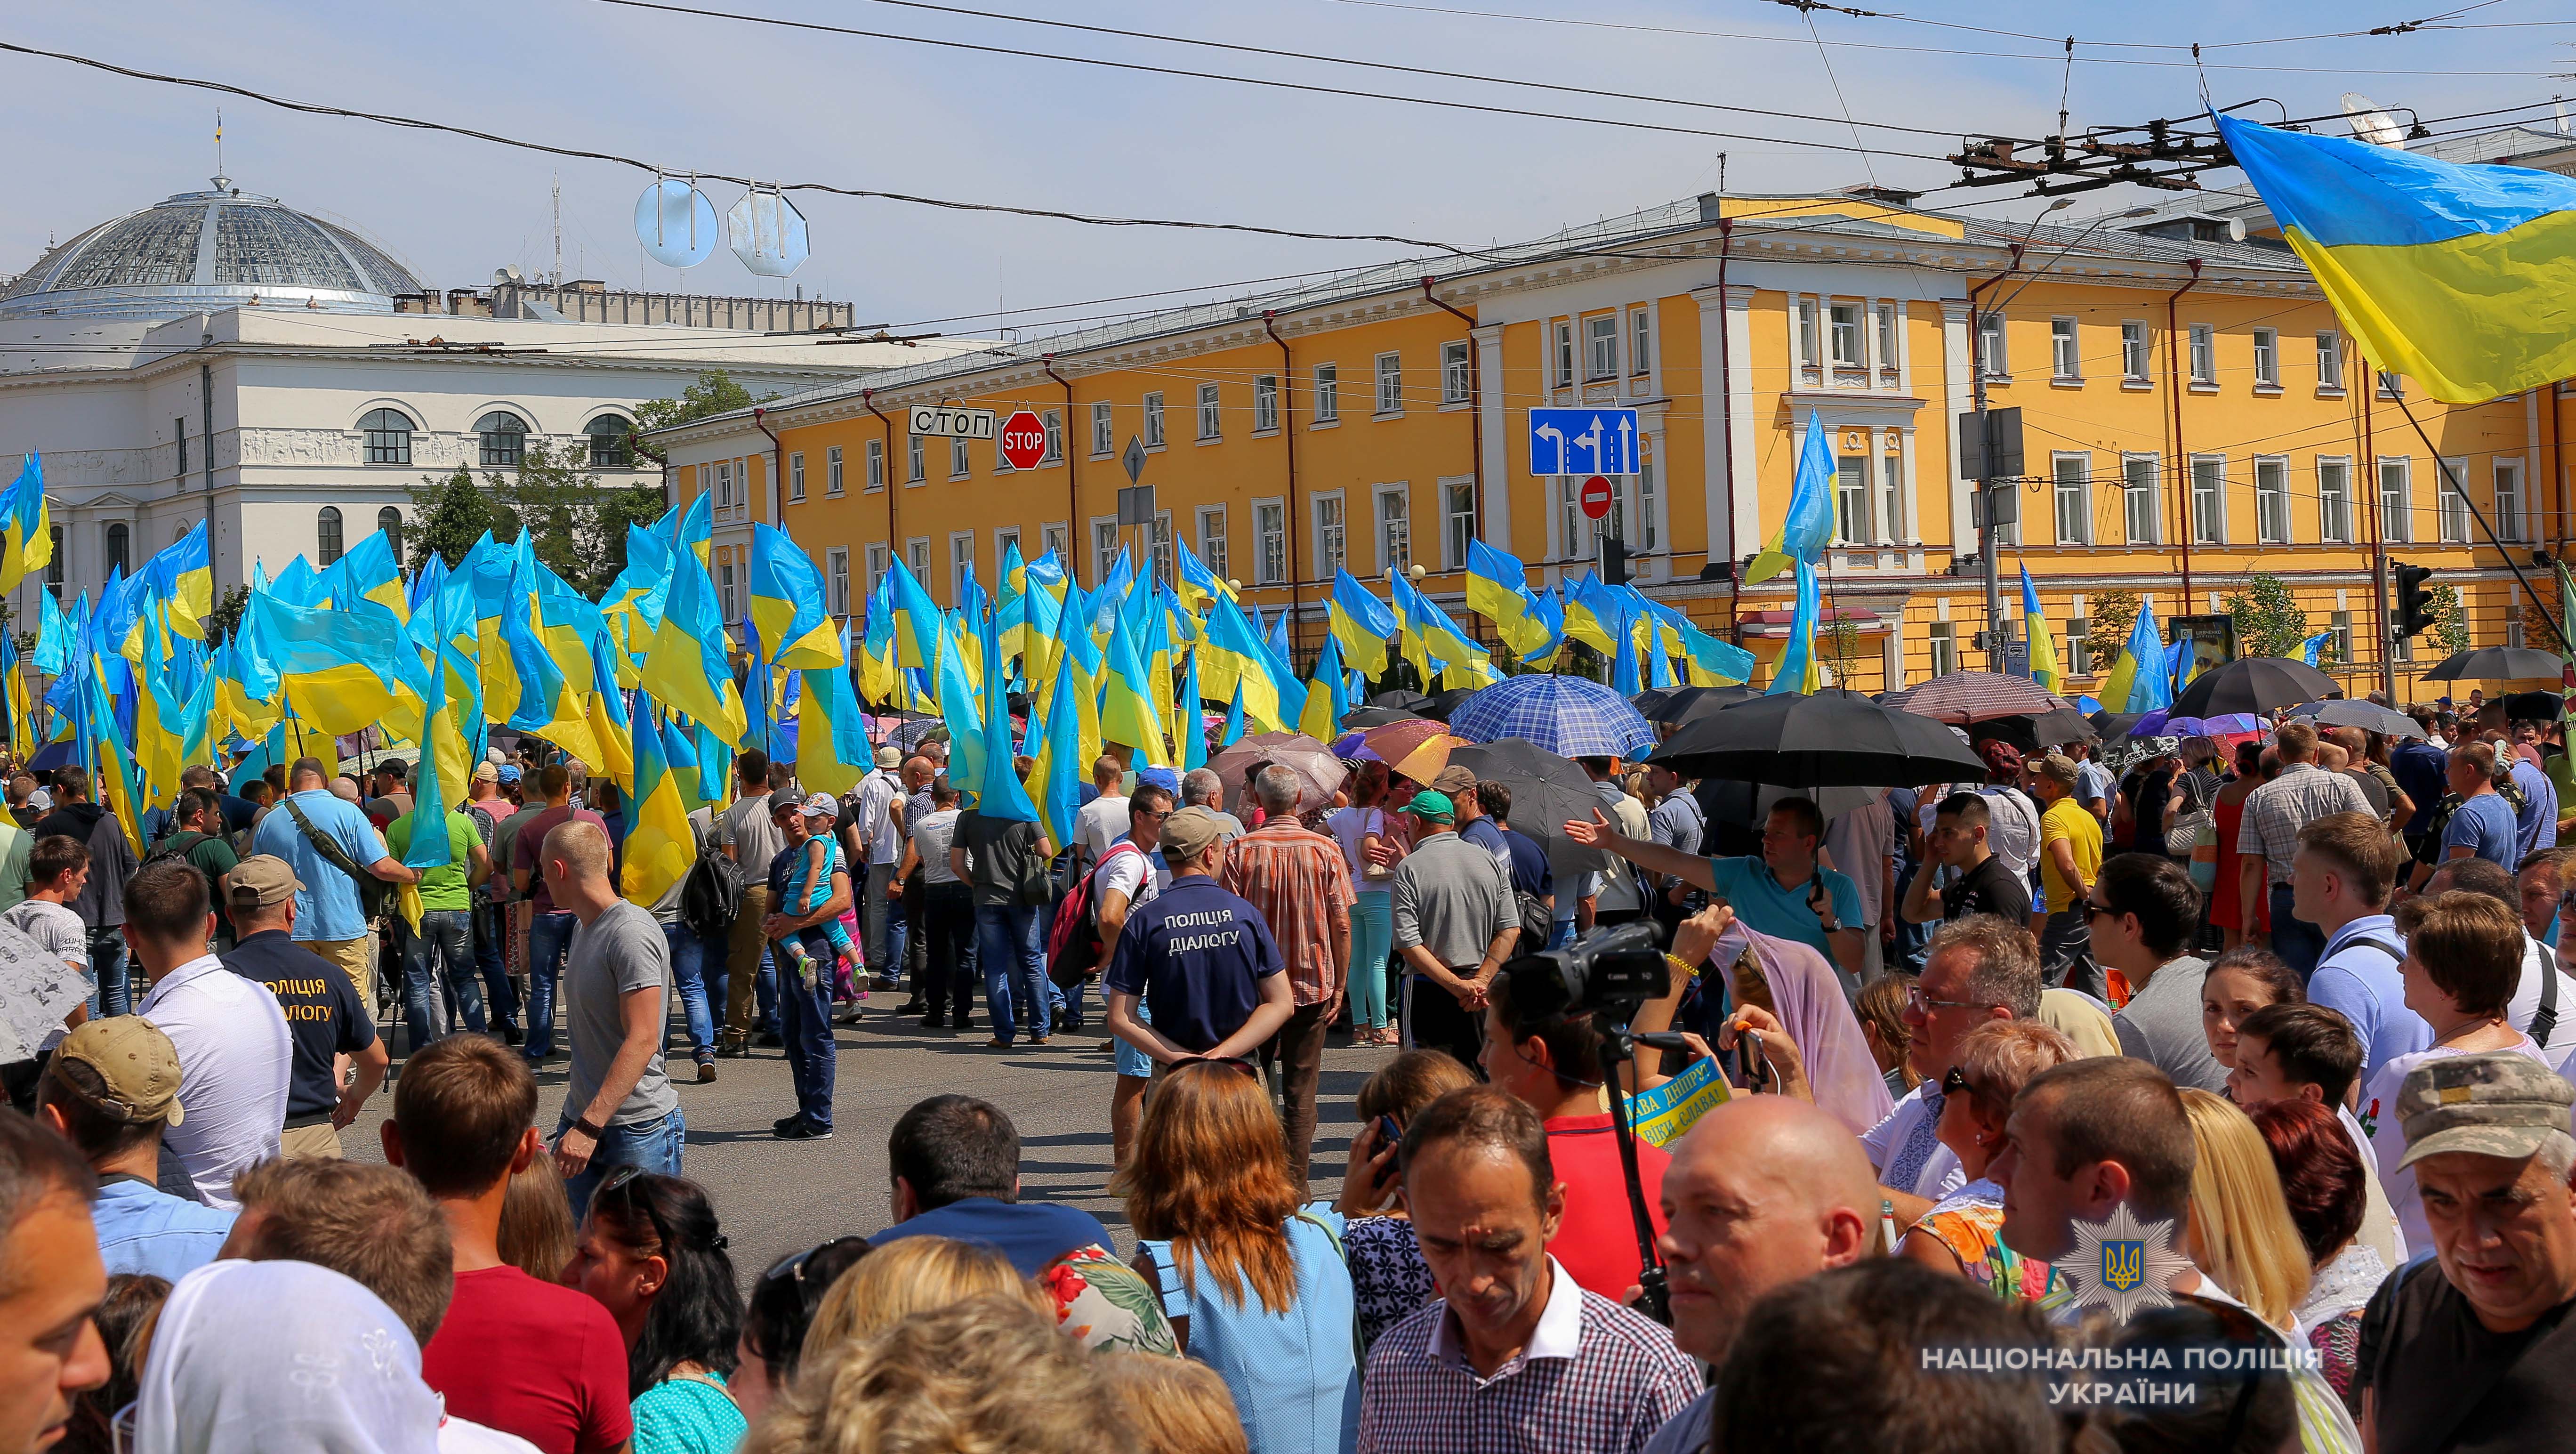 Мероприятия за Единую поместную церковь в Украине прошли спокойно, - Александр Фацевич (фото, видео)